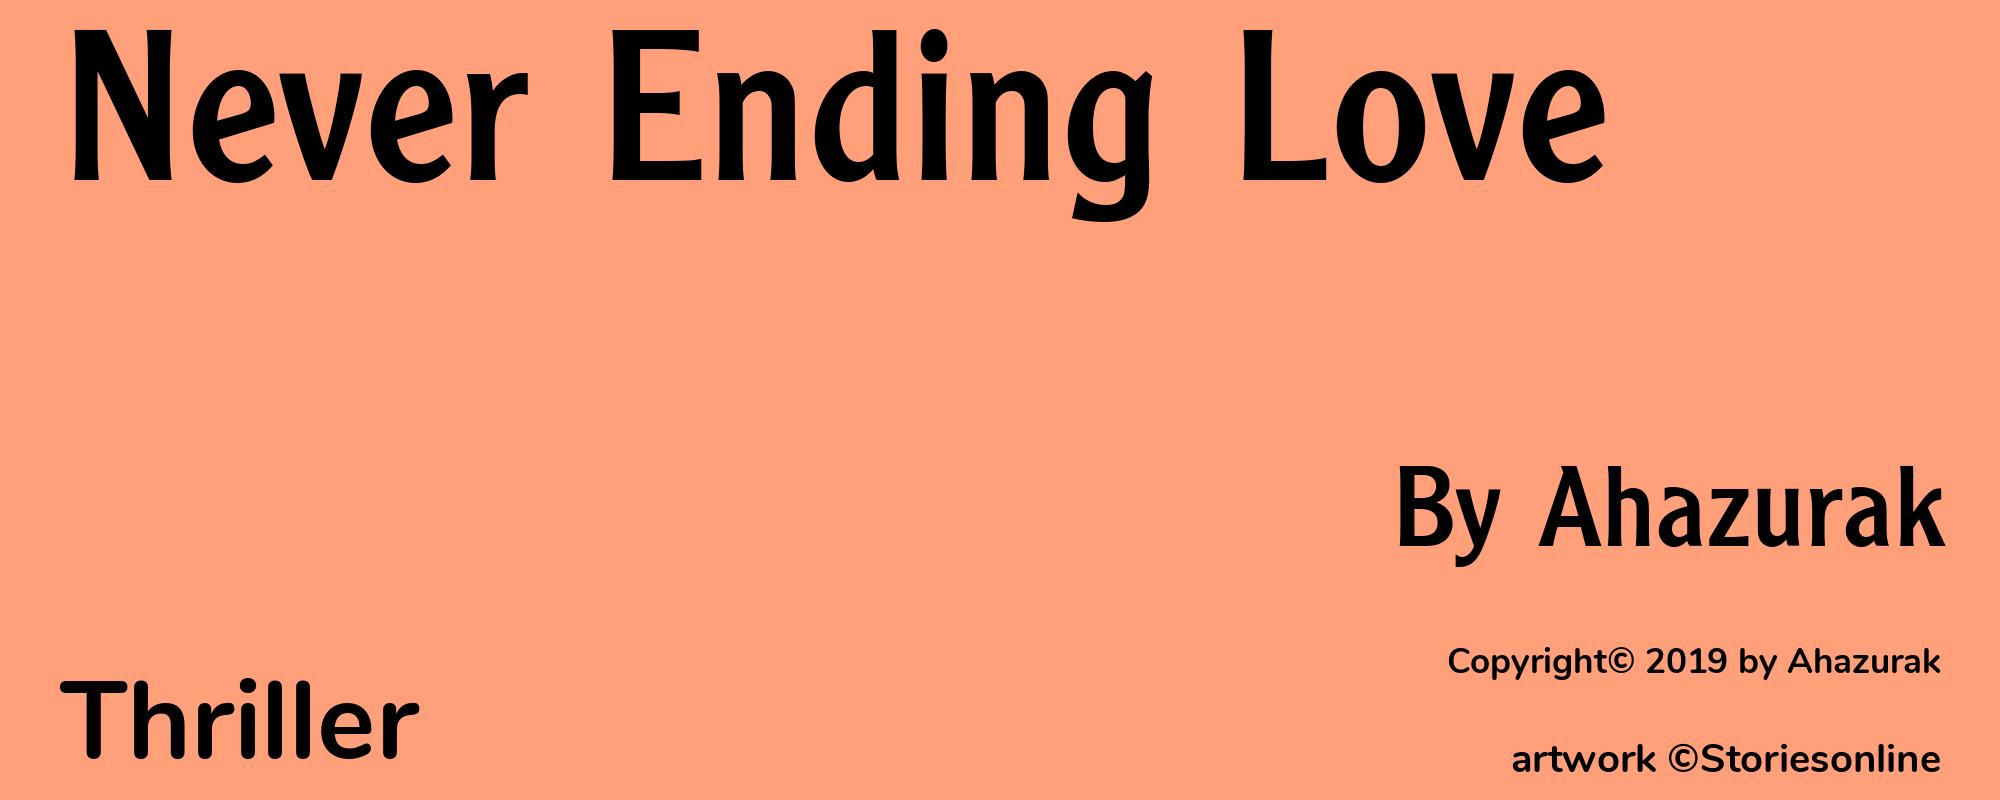 Never Ending Love - Cover